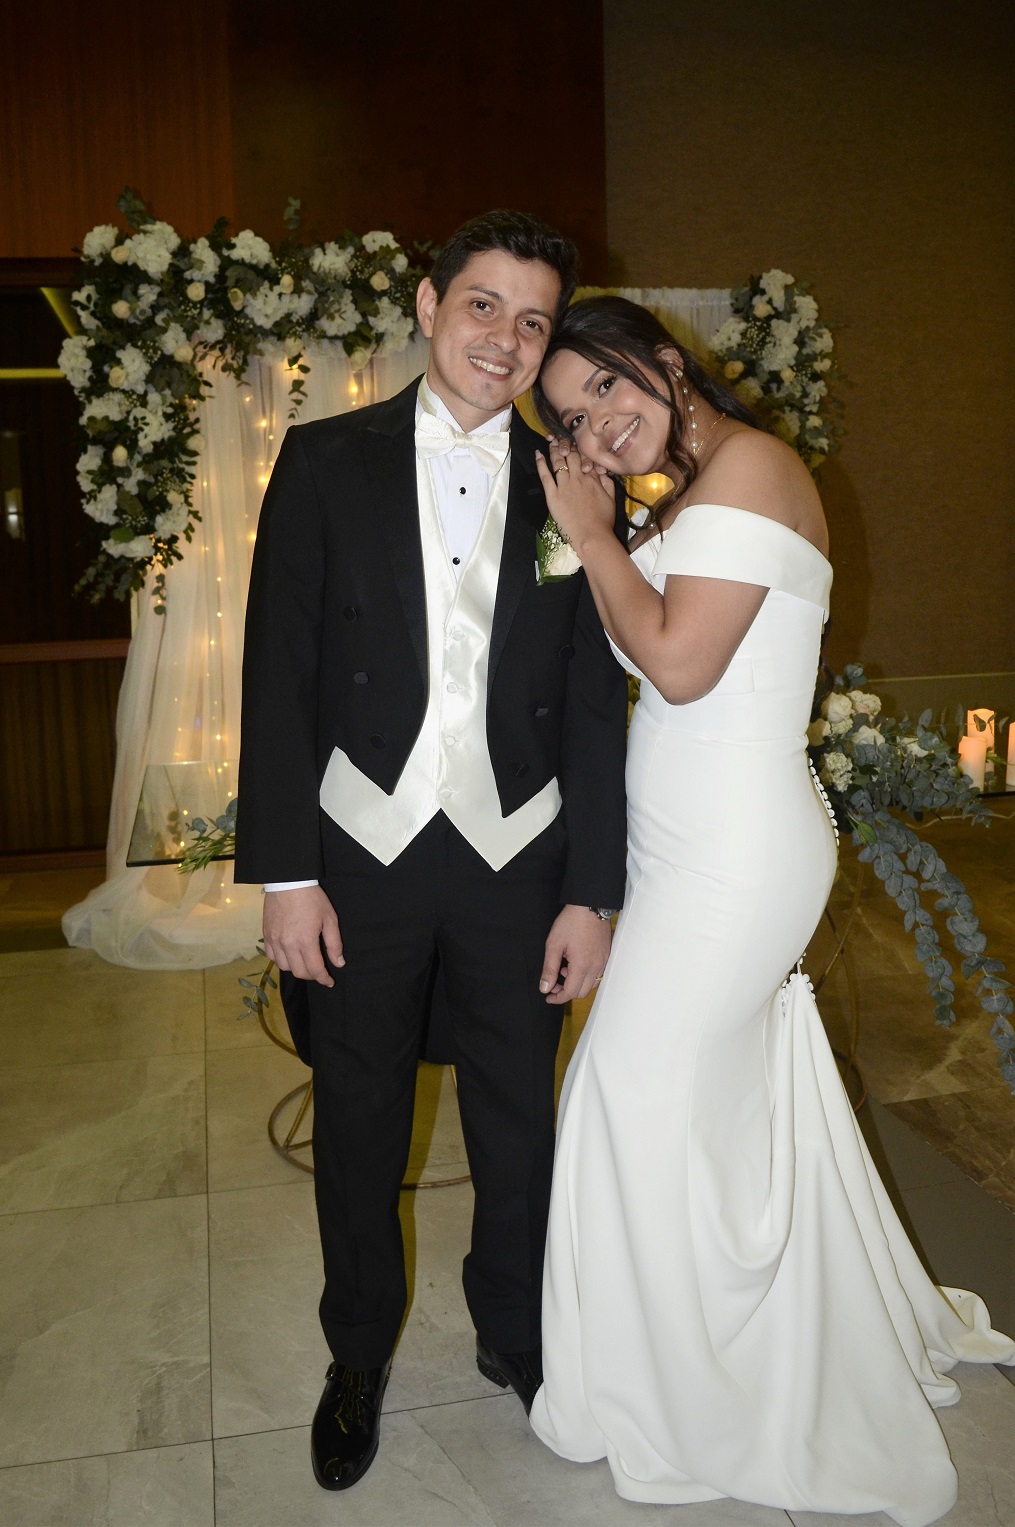 Felicitaciones y buenos augurios para los nuevos esposos Rodríguez - Martínez